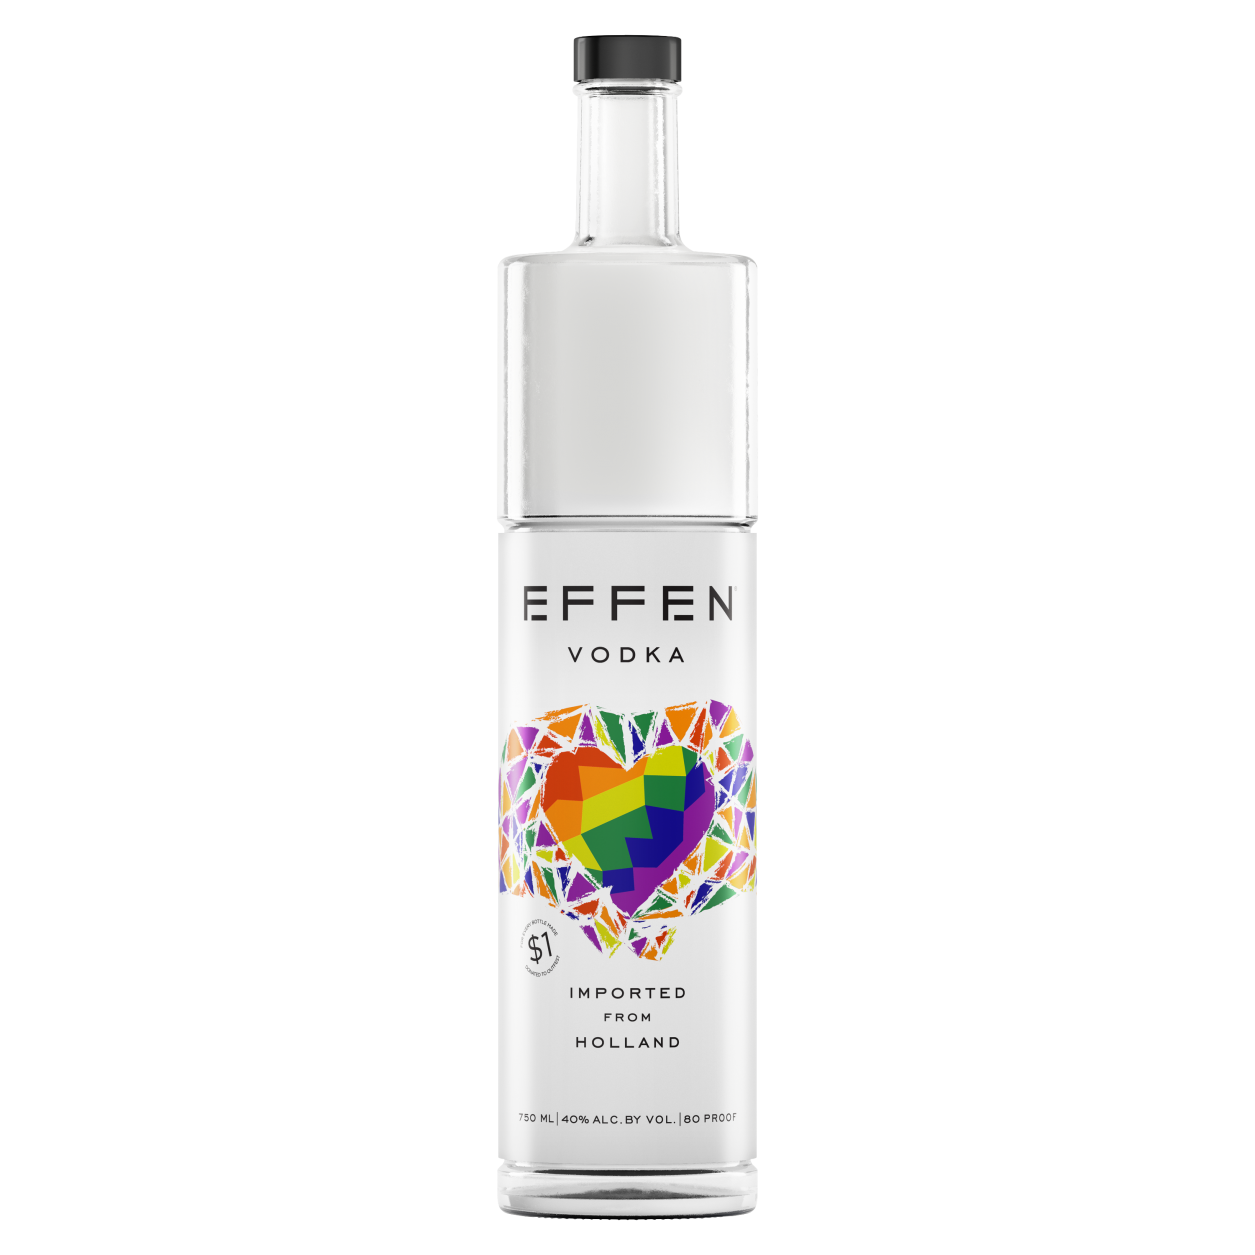 EFFEN Pride LTO 2019 Bottle